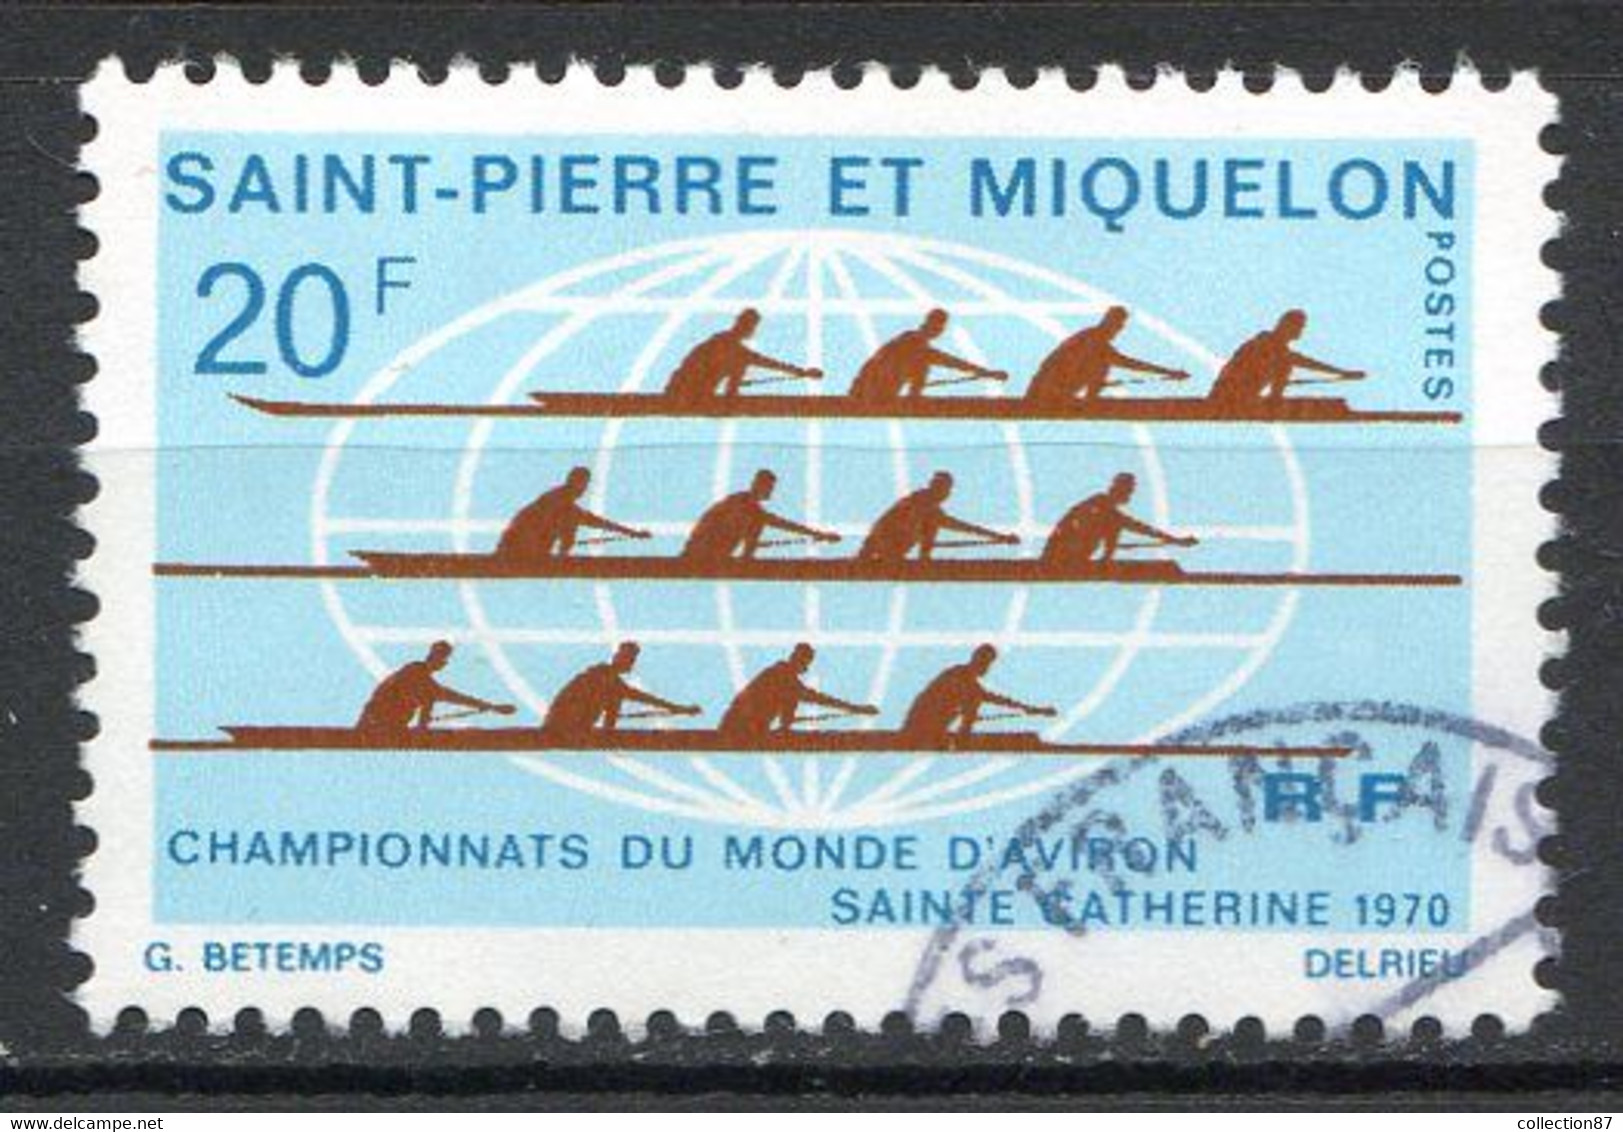 Réf 55 CL2 < -- SAINT PIERRE Et MIQUELON < Yvert N° 405 Ø < Oblitéré Ø Used < Championnat Du Monde D'Aviron - Used Stamps